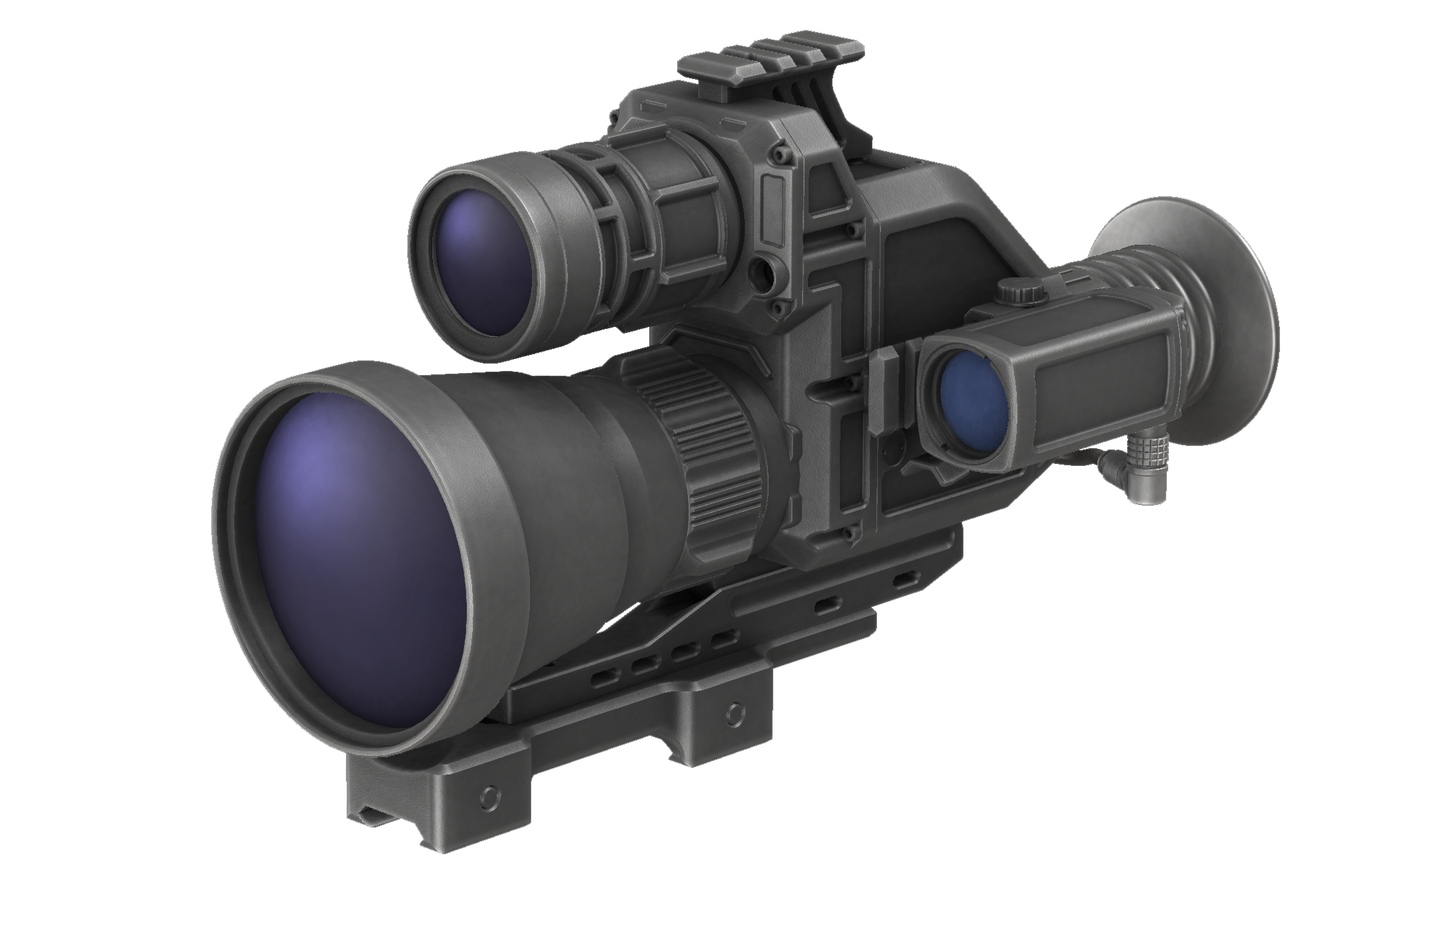 Aurora-CLR905 - Compact Laser Rangefinder